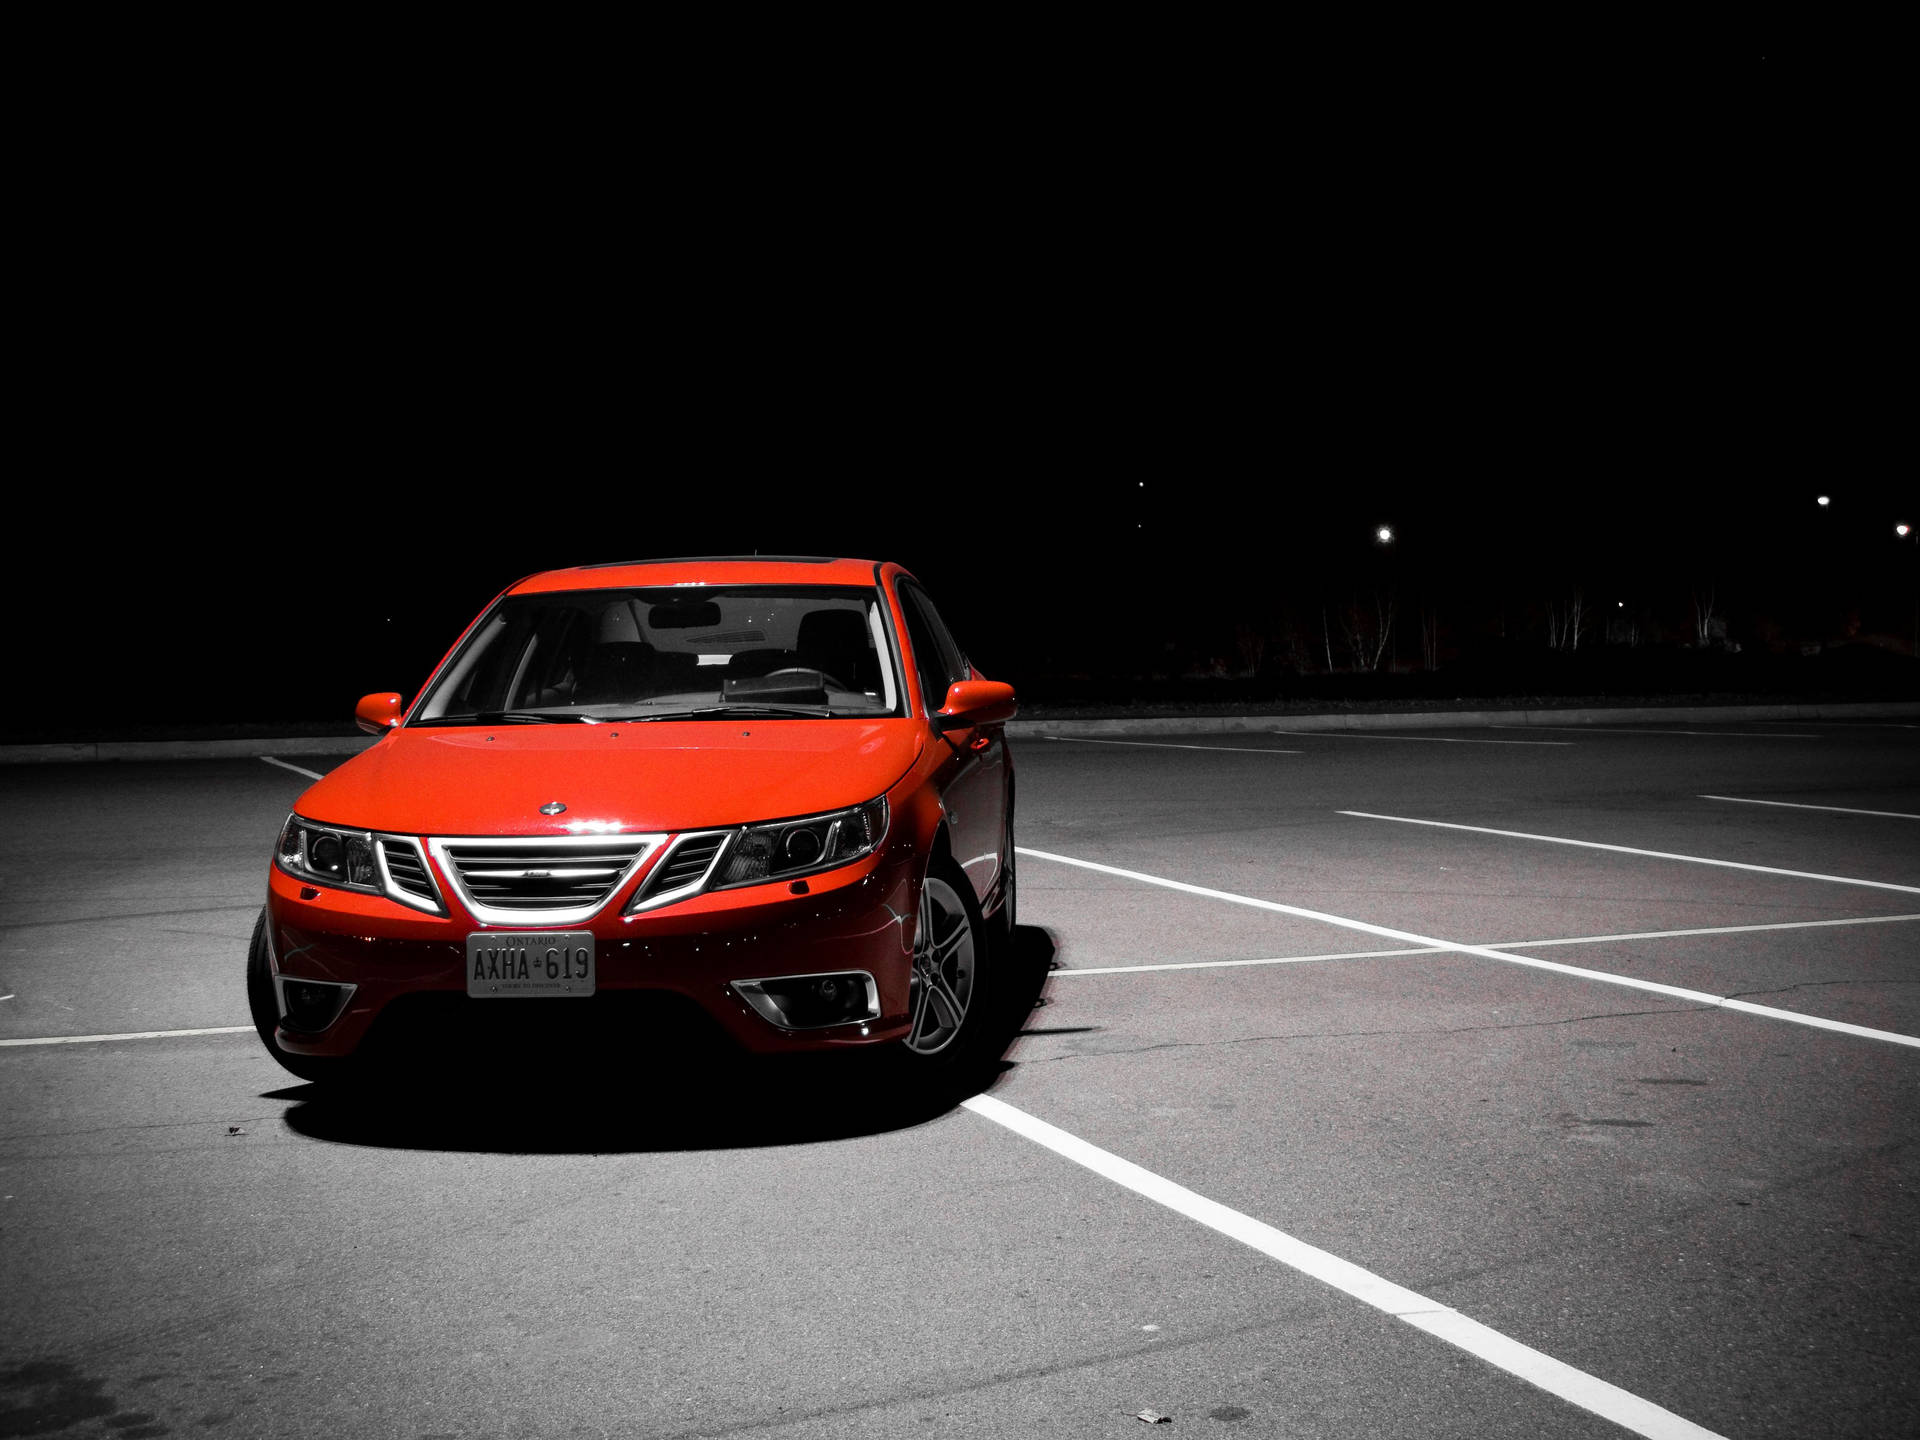 Dark Red Saab Sedan Background